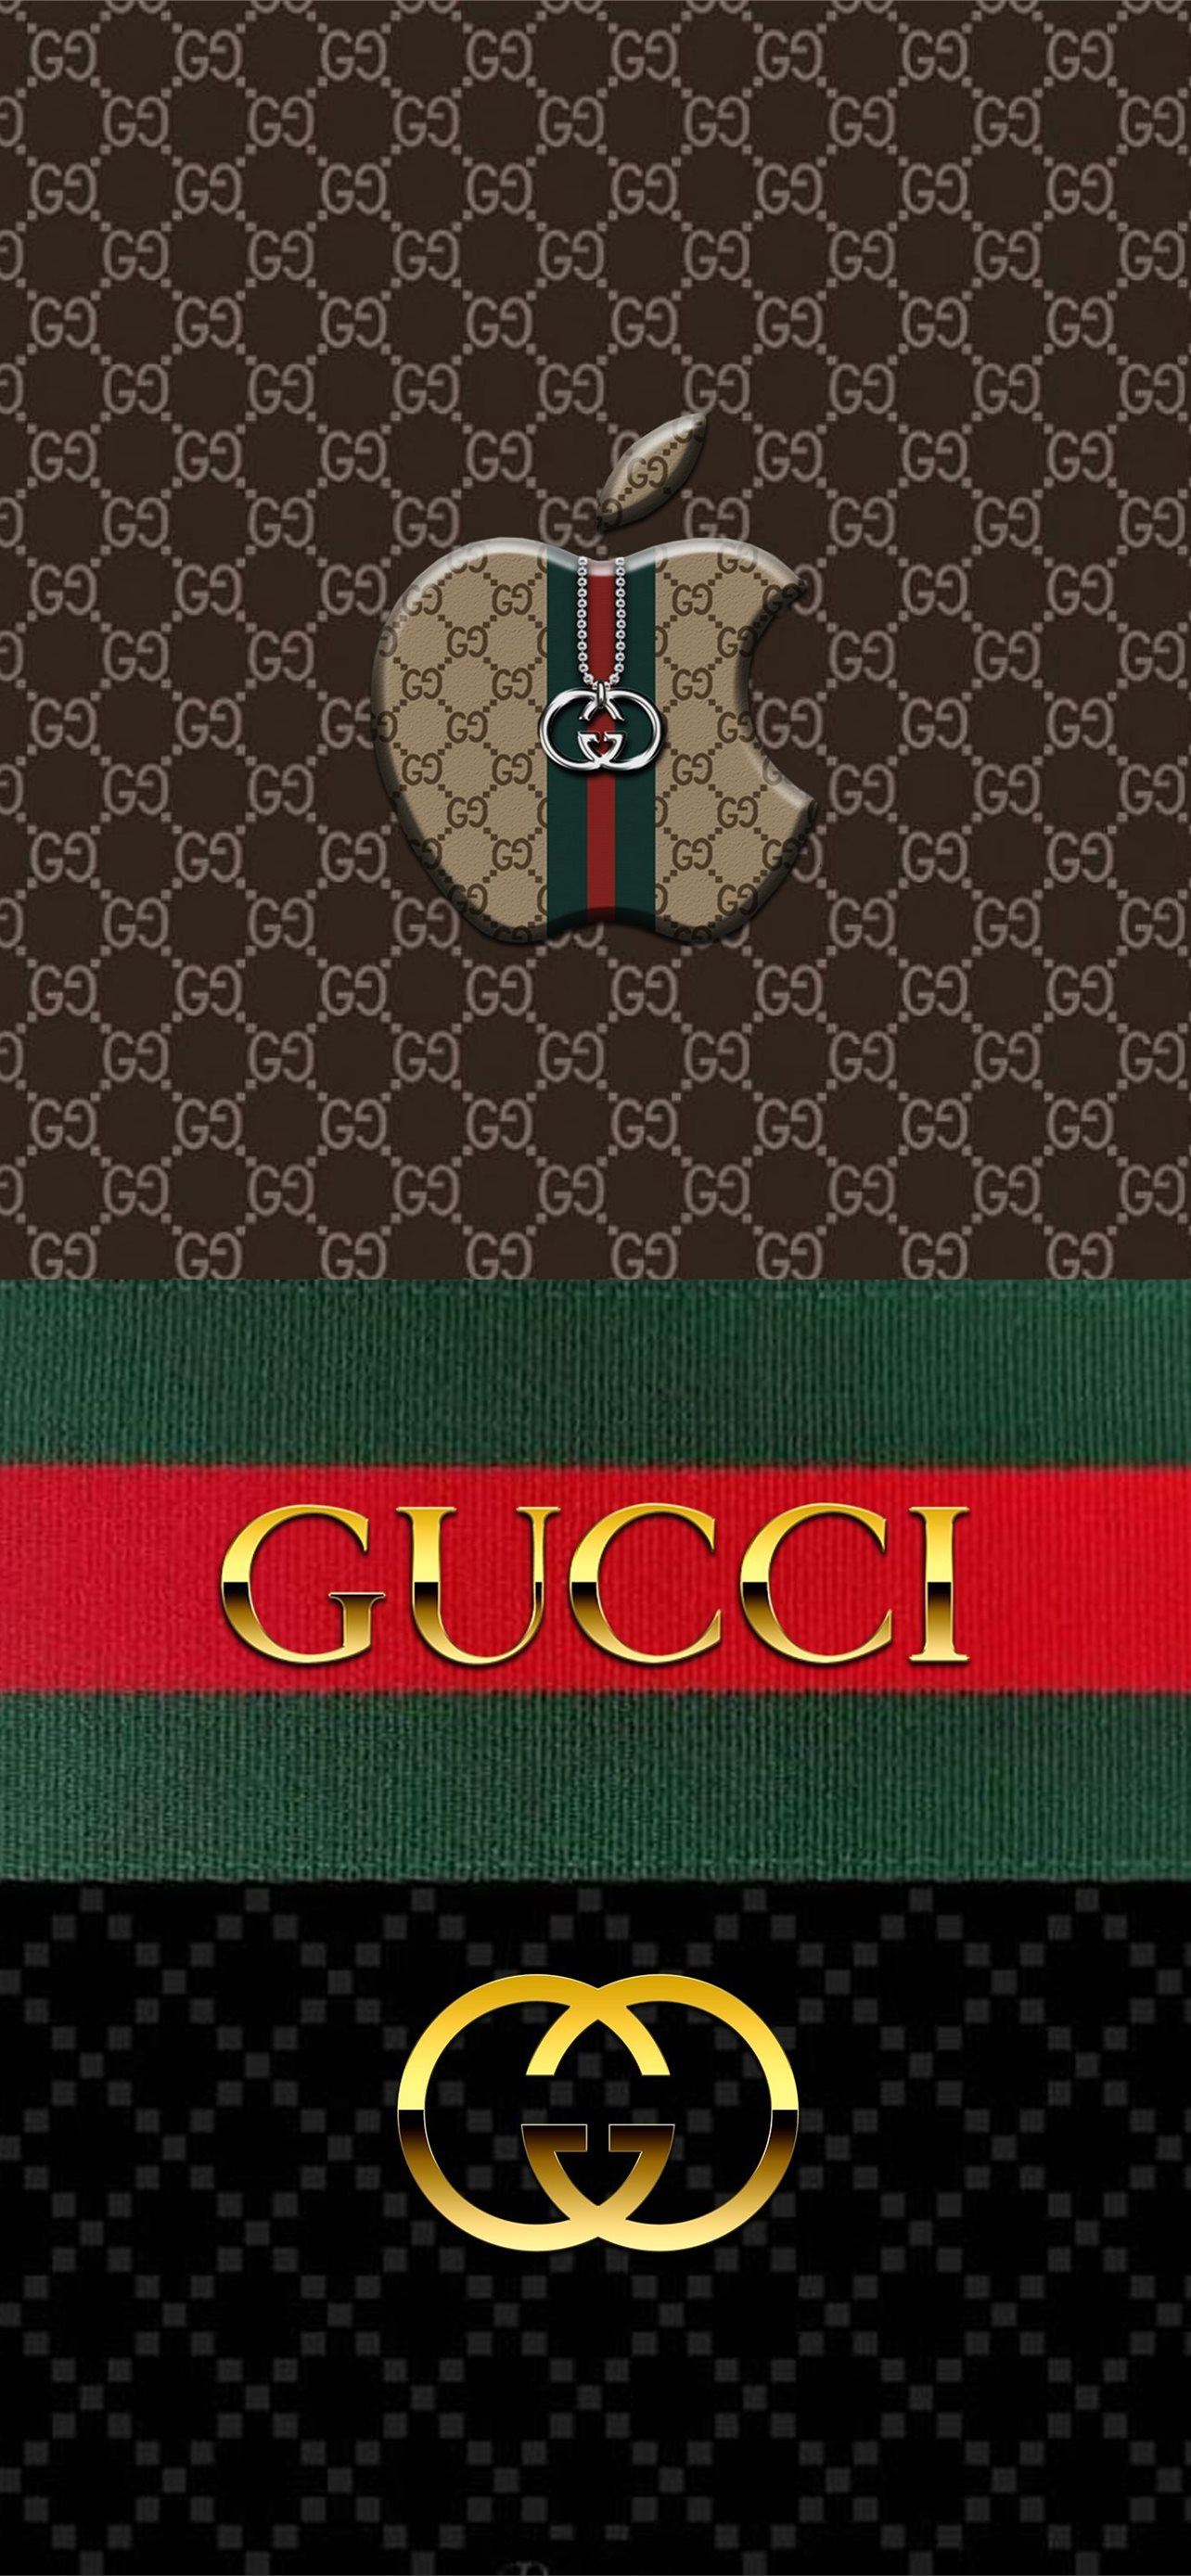 Hình ảnh Gucci đẹp chất lượng 4K làm hình nền tuyệt đẹp